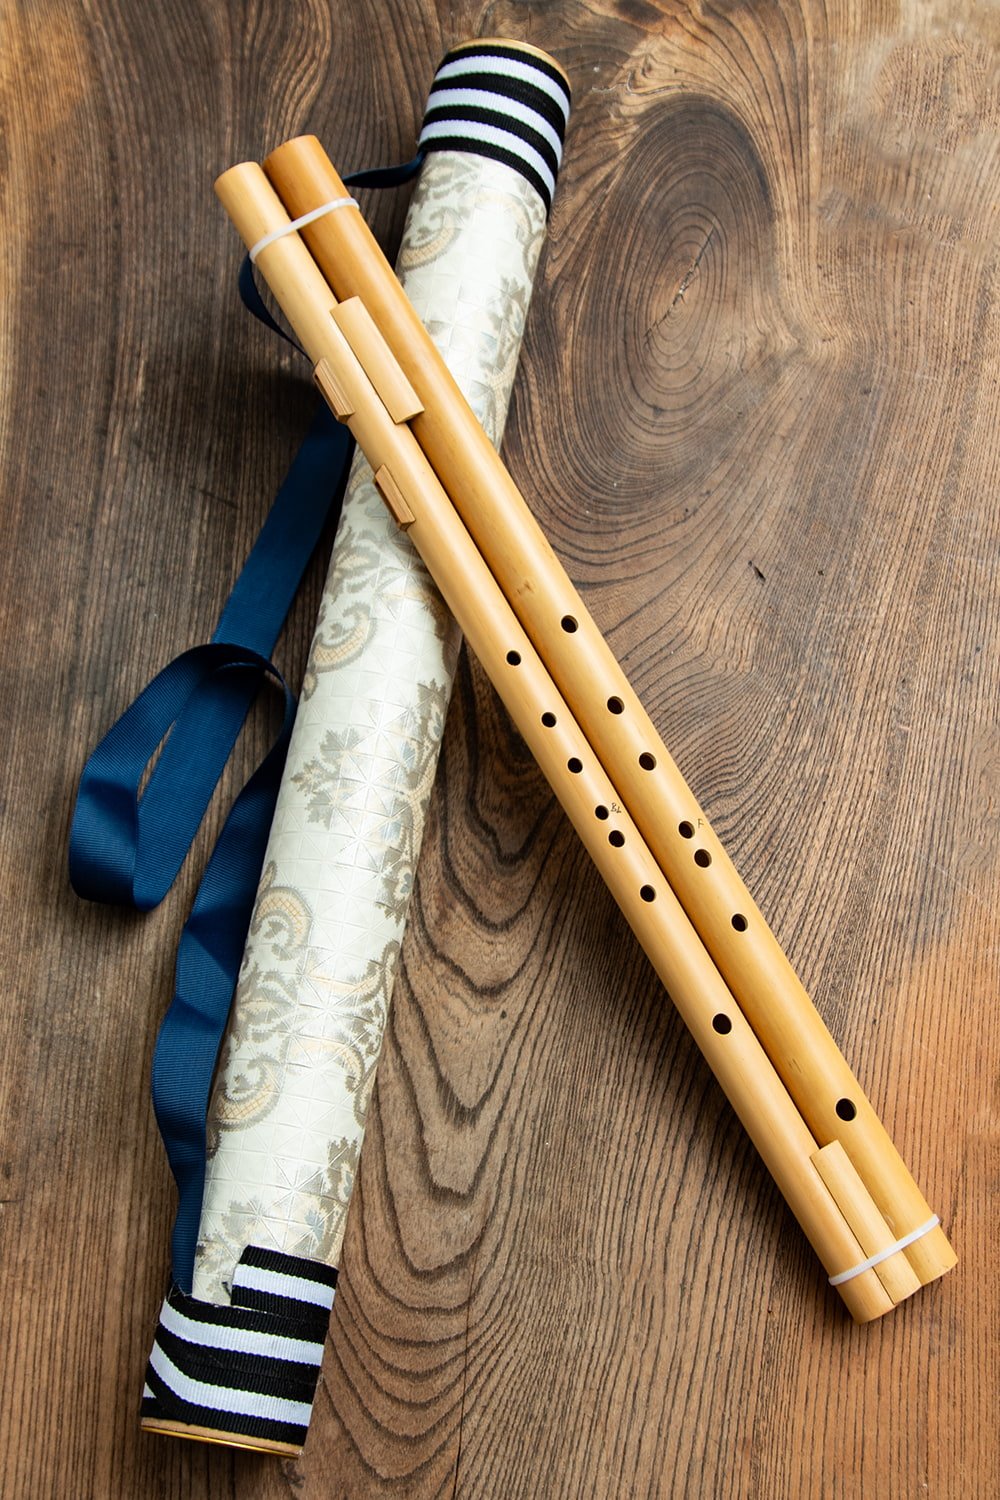 【送料無料】 ダブル サーオ ミャオ ベトナムのリード付き二重フルート / 横笛 バンブーフルート アムサーオ 管楽器 民族楽器 インド楽